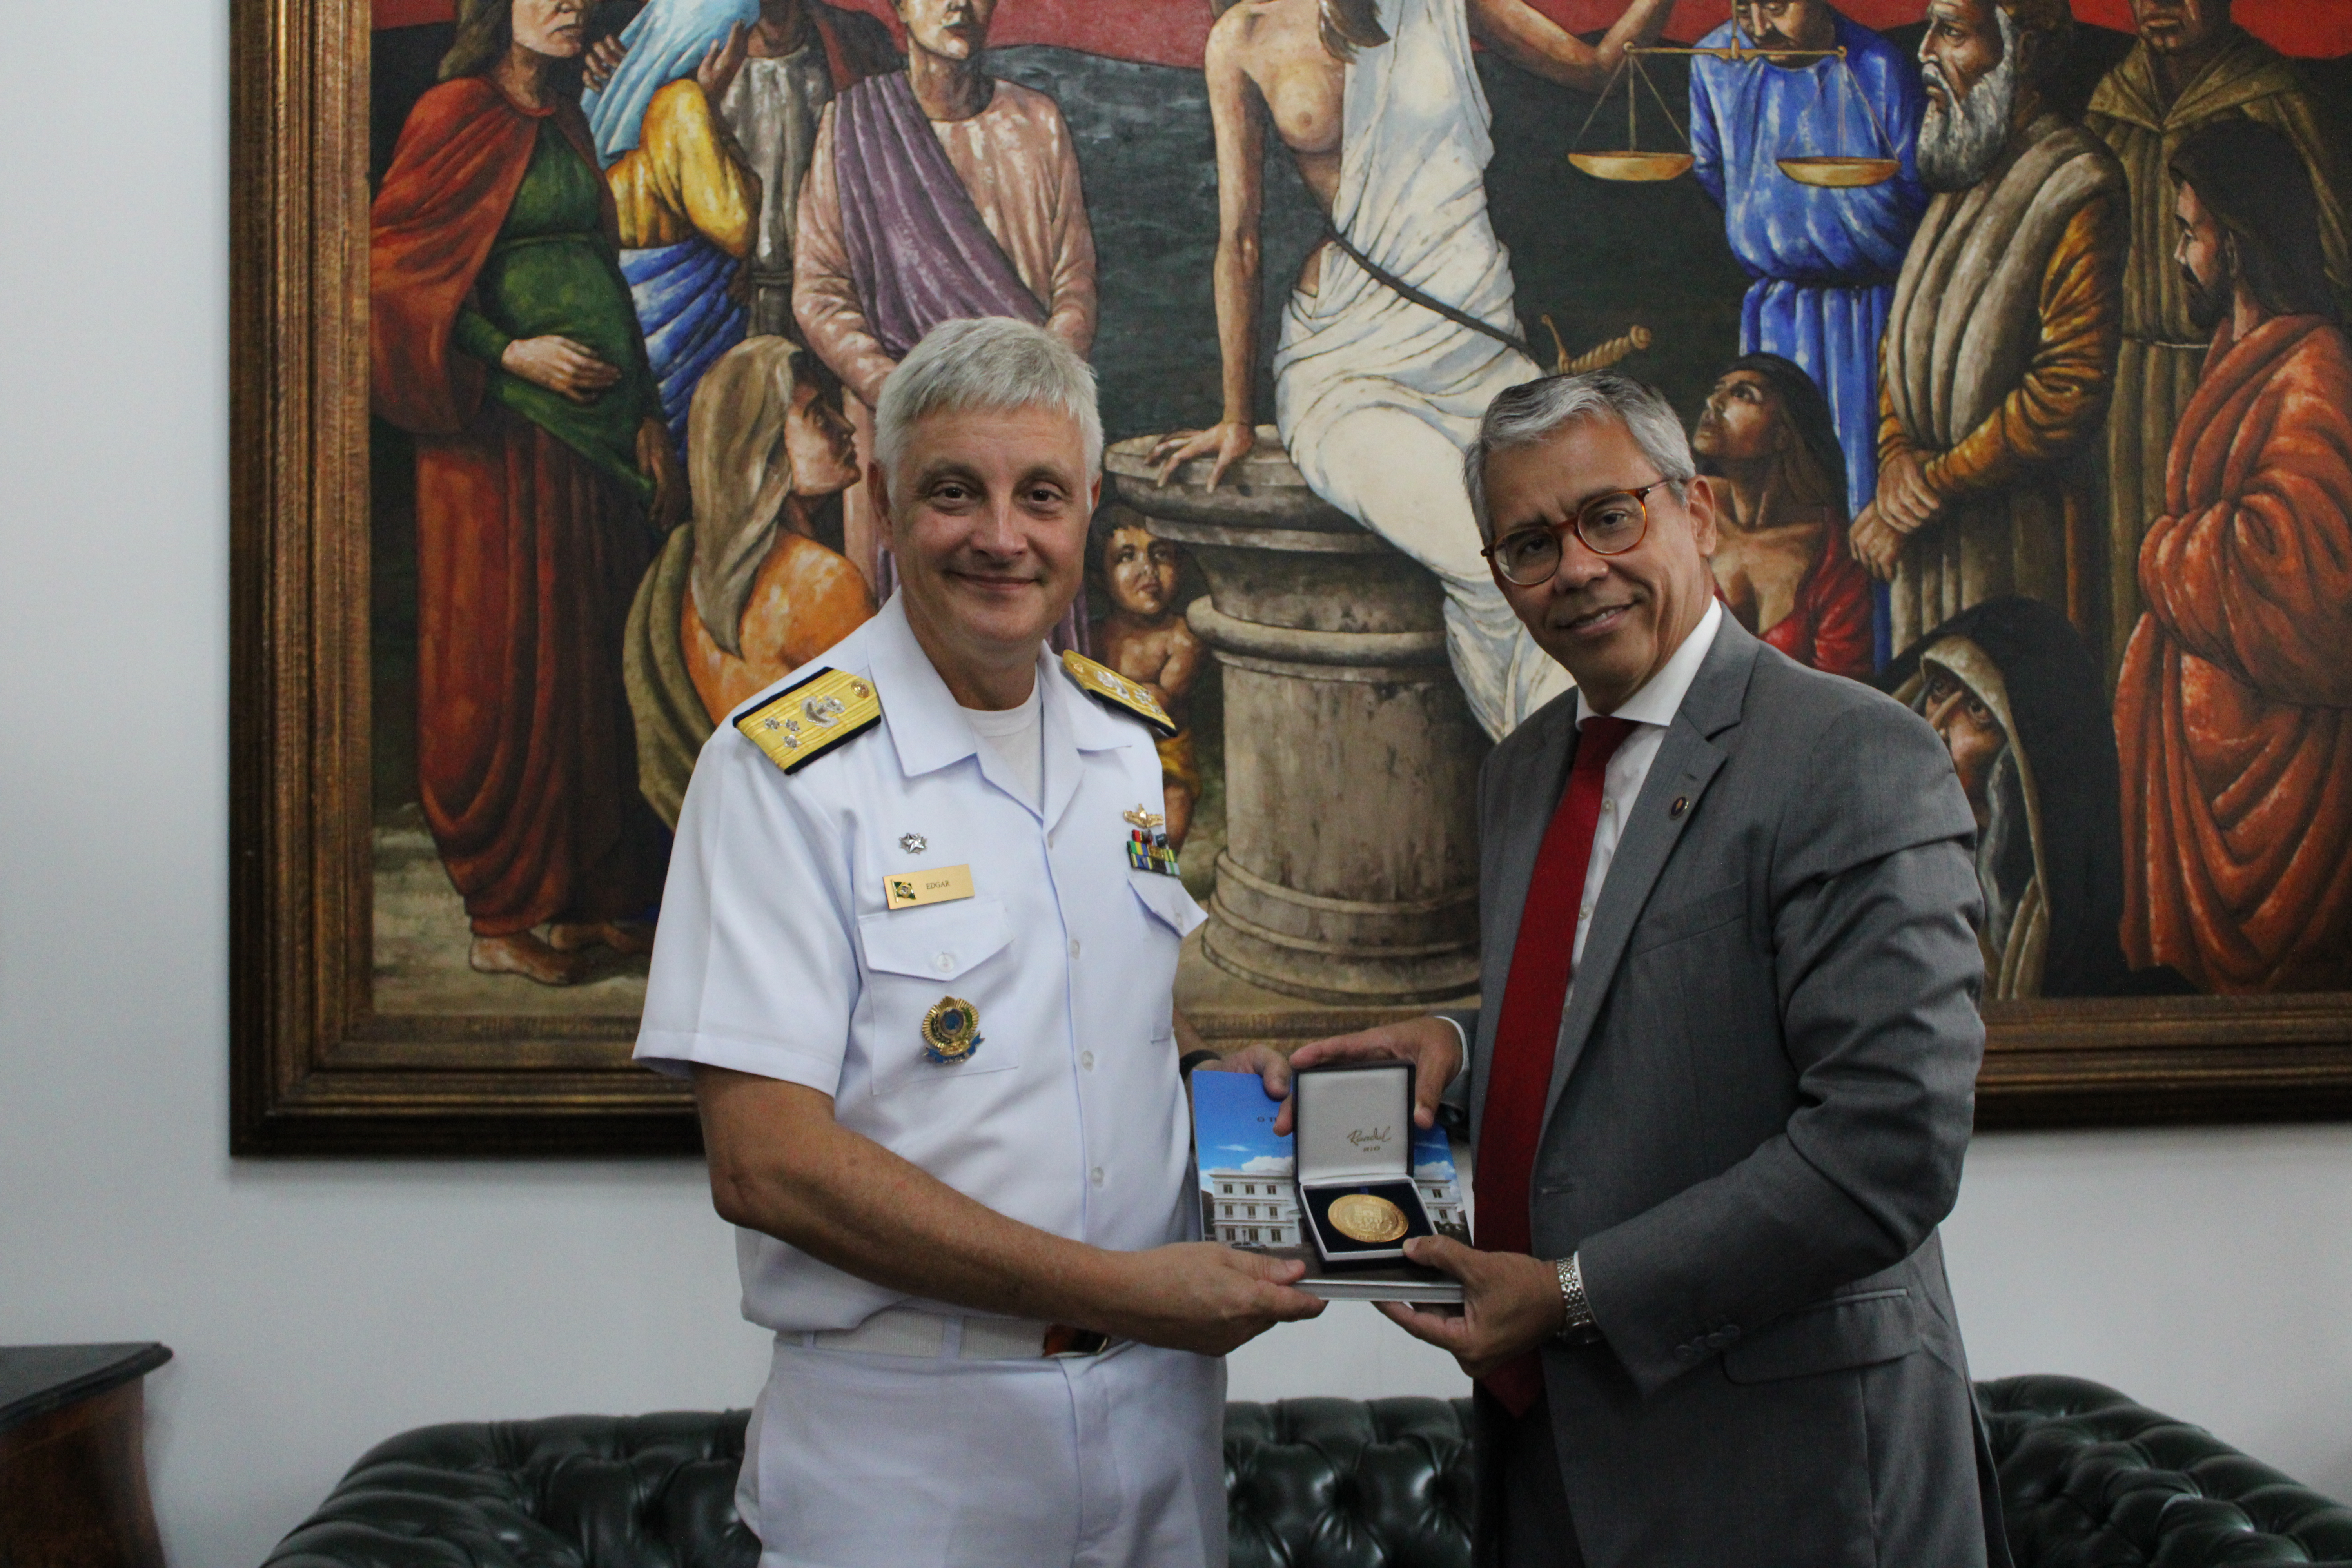 O vice-lamirante de farda recebendo um livro e medalha do TJMA das mãos do presidente do TJMA de terno em pé